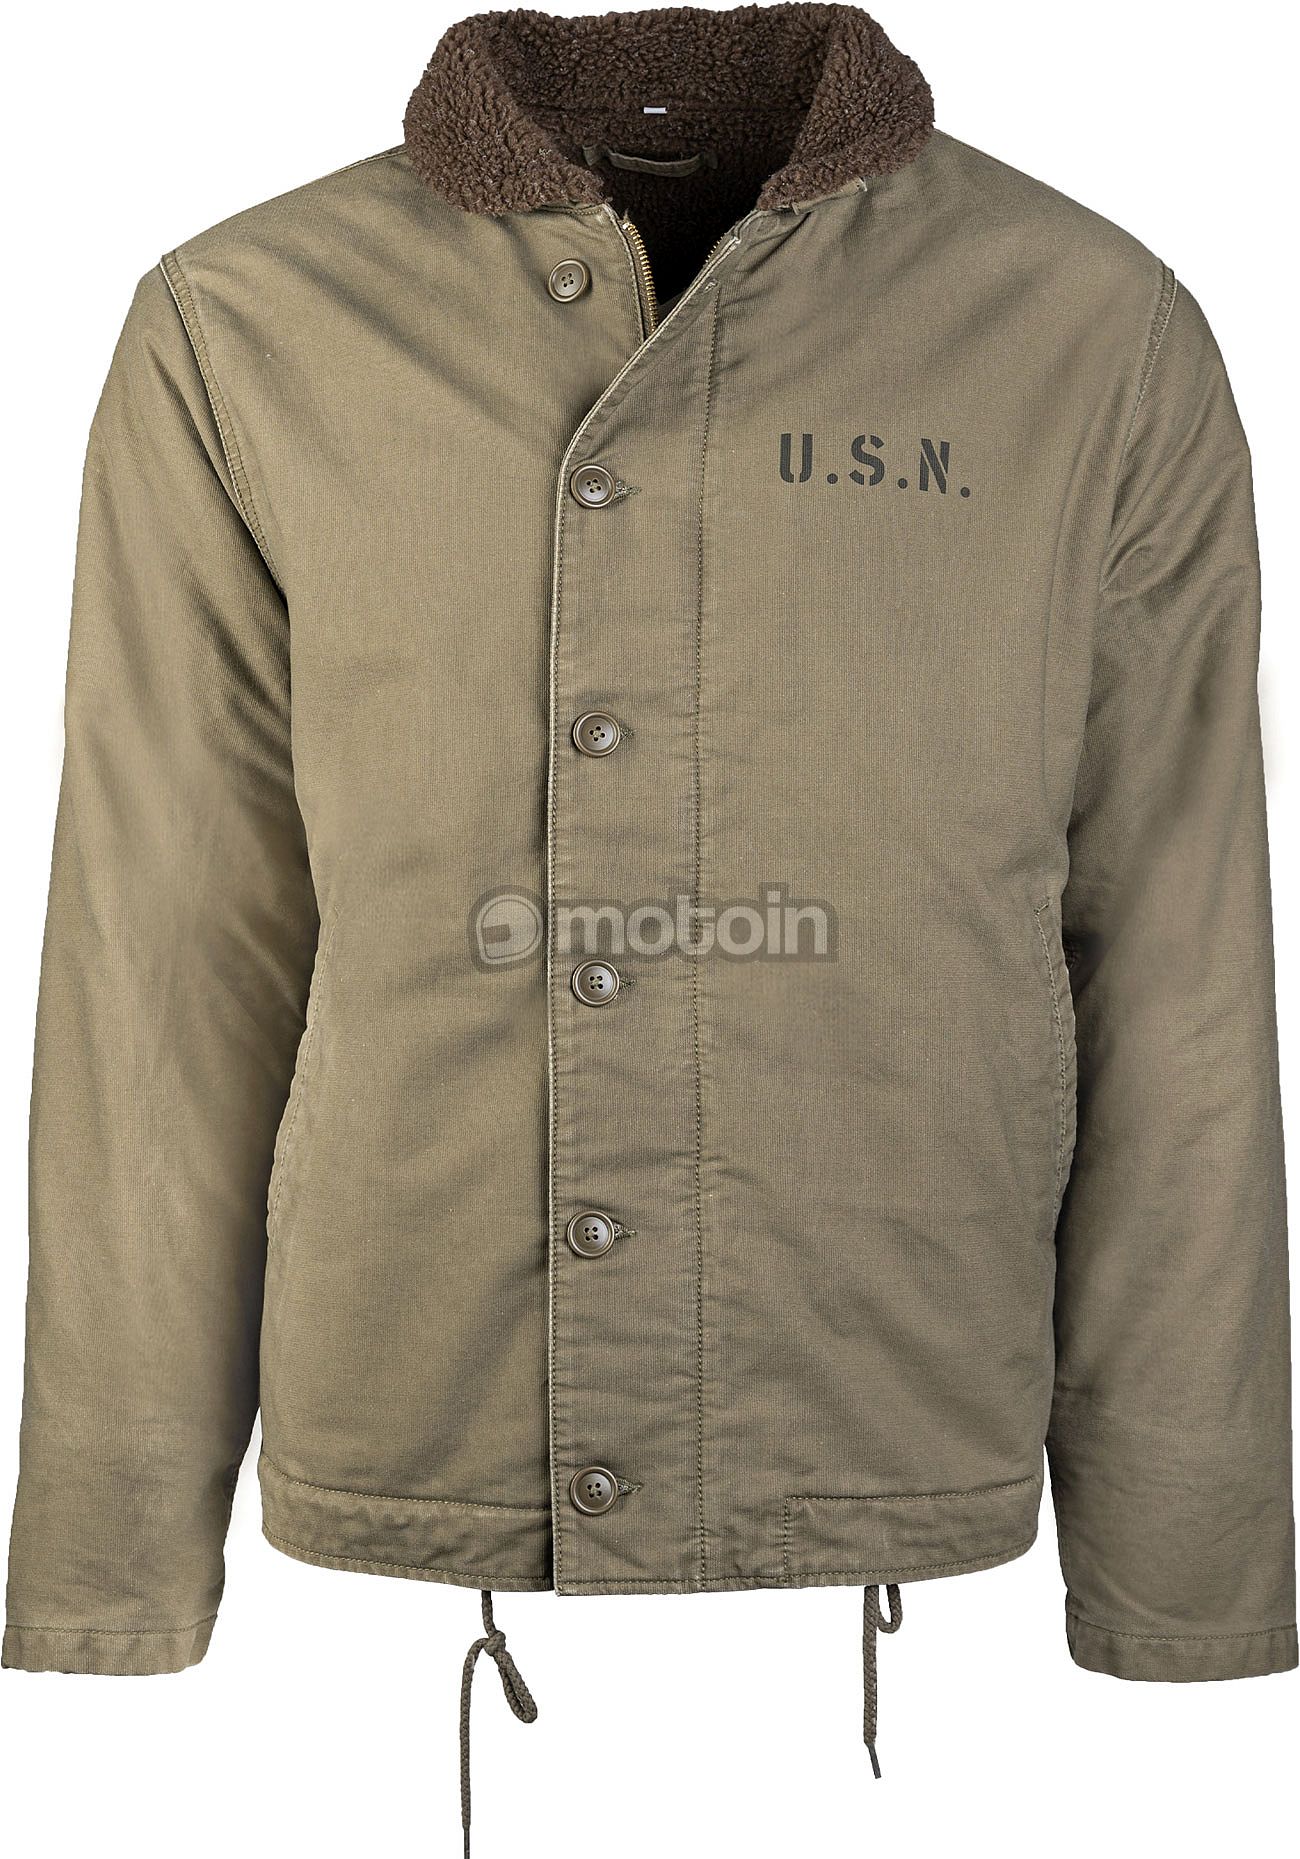 Mil-Tec US Navy Deck N-1, textile jacket